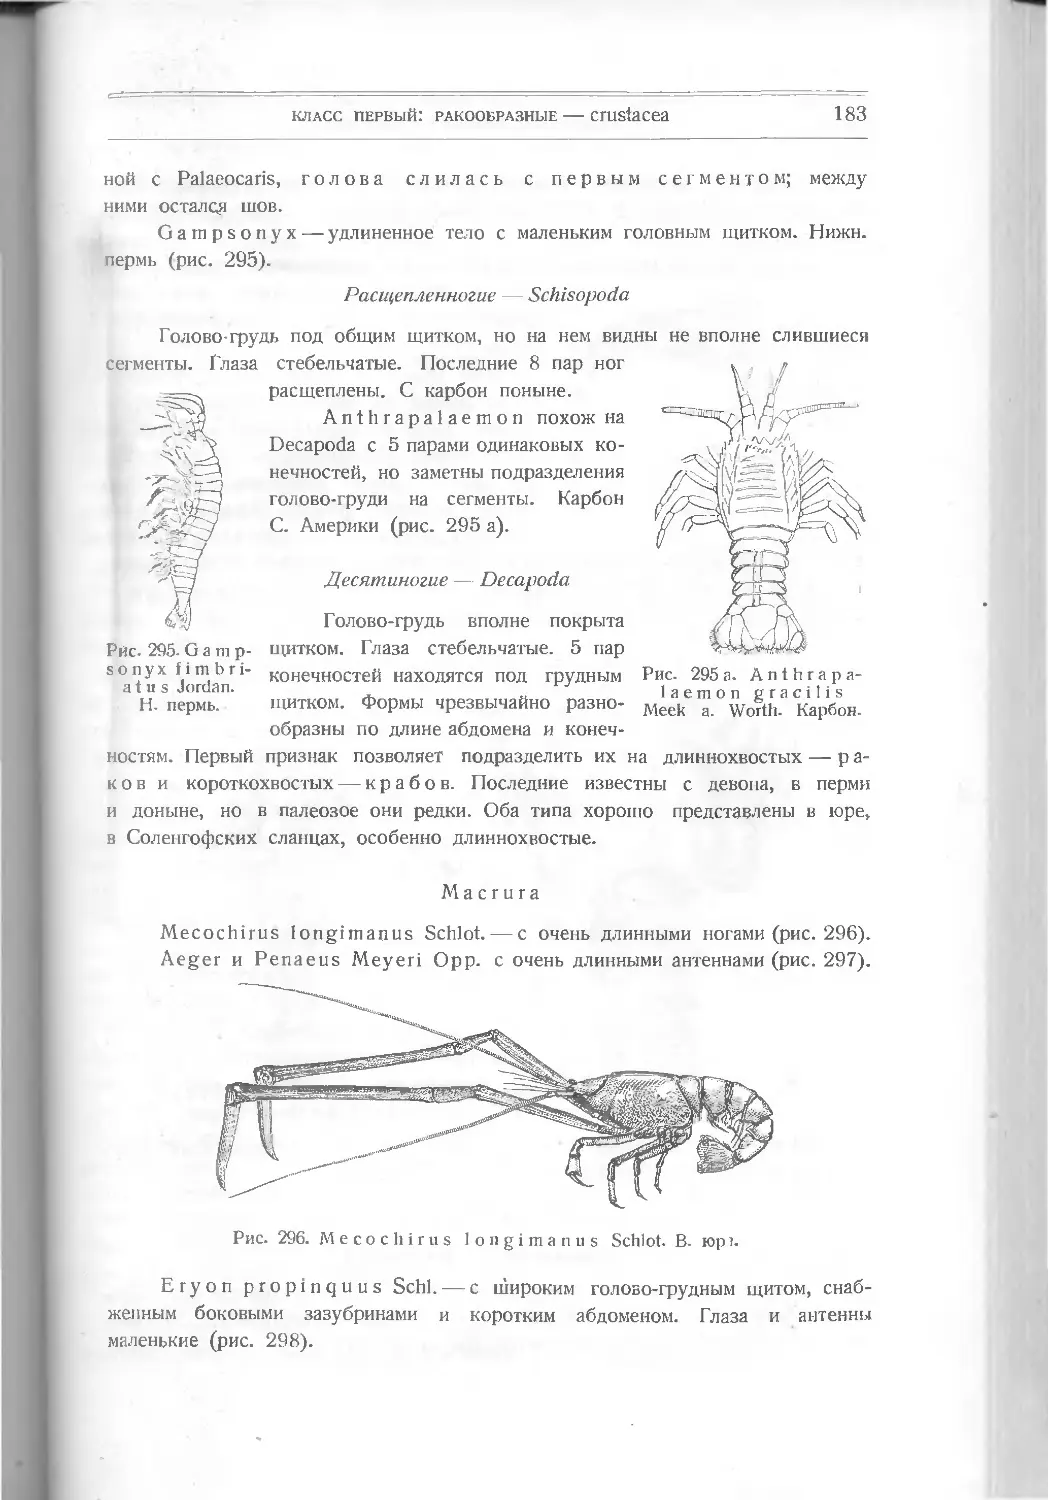 Расщепленноногие – Schizopoda
Десятиногие – Decapoda
Macrura